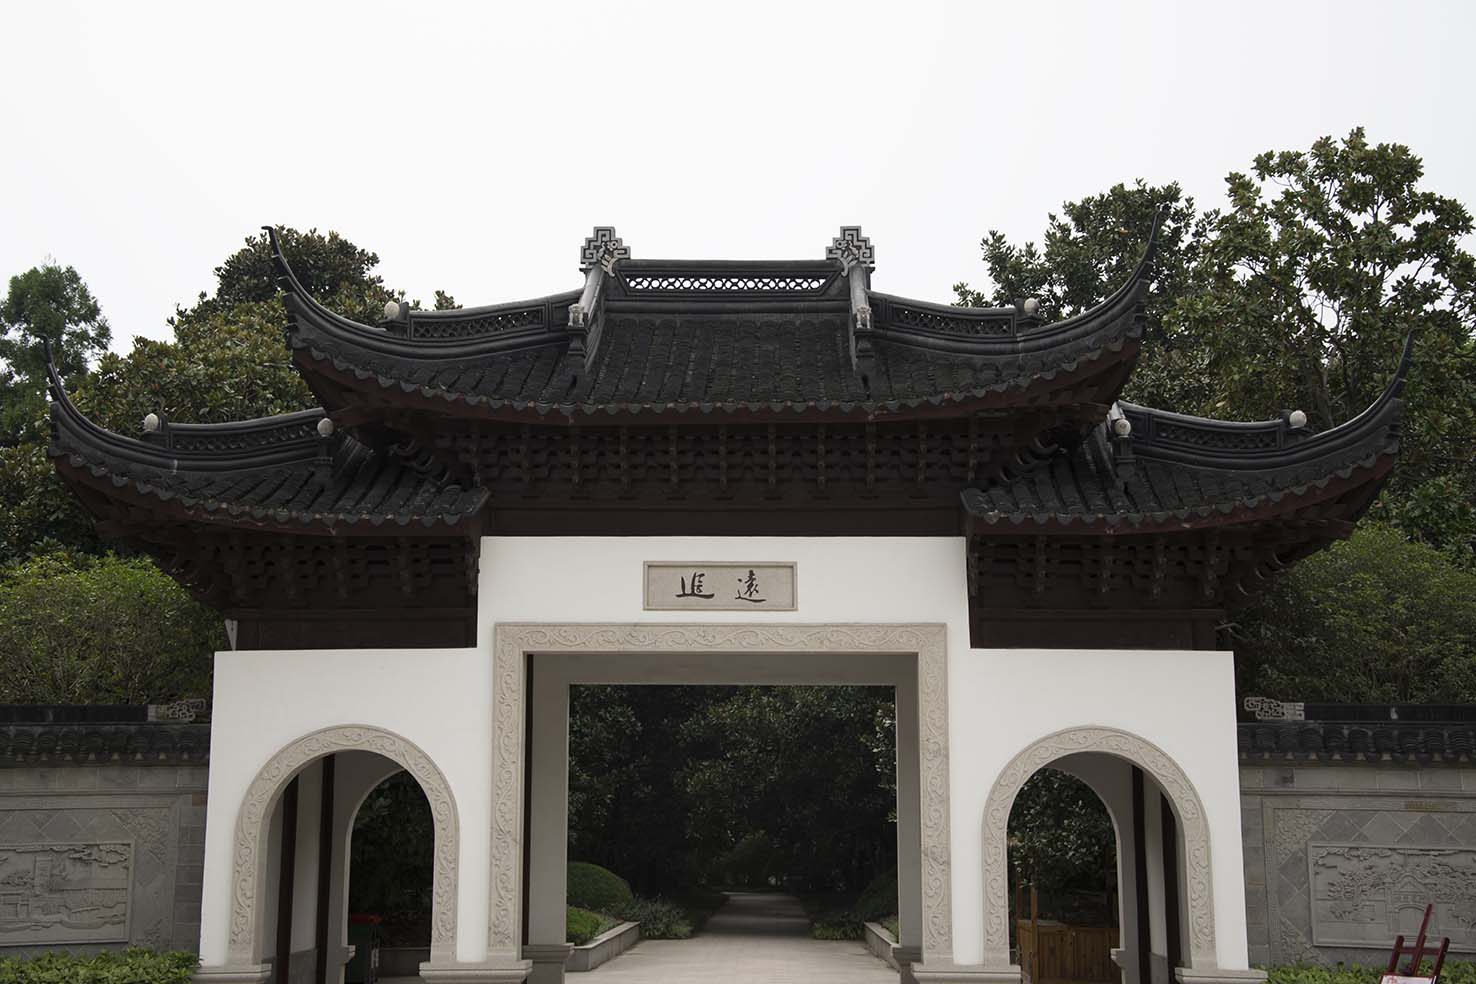 De oude Chinese poort van de tuinarchitectuur